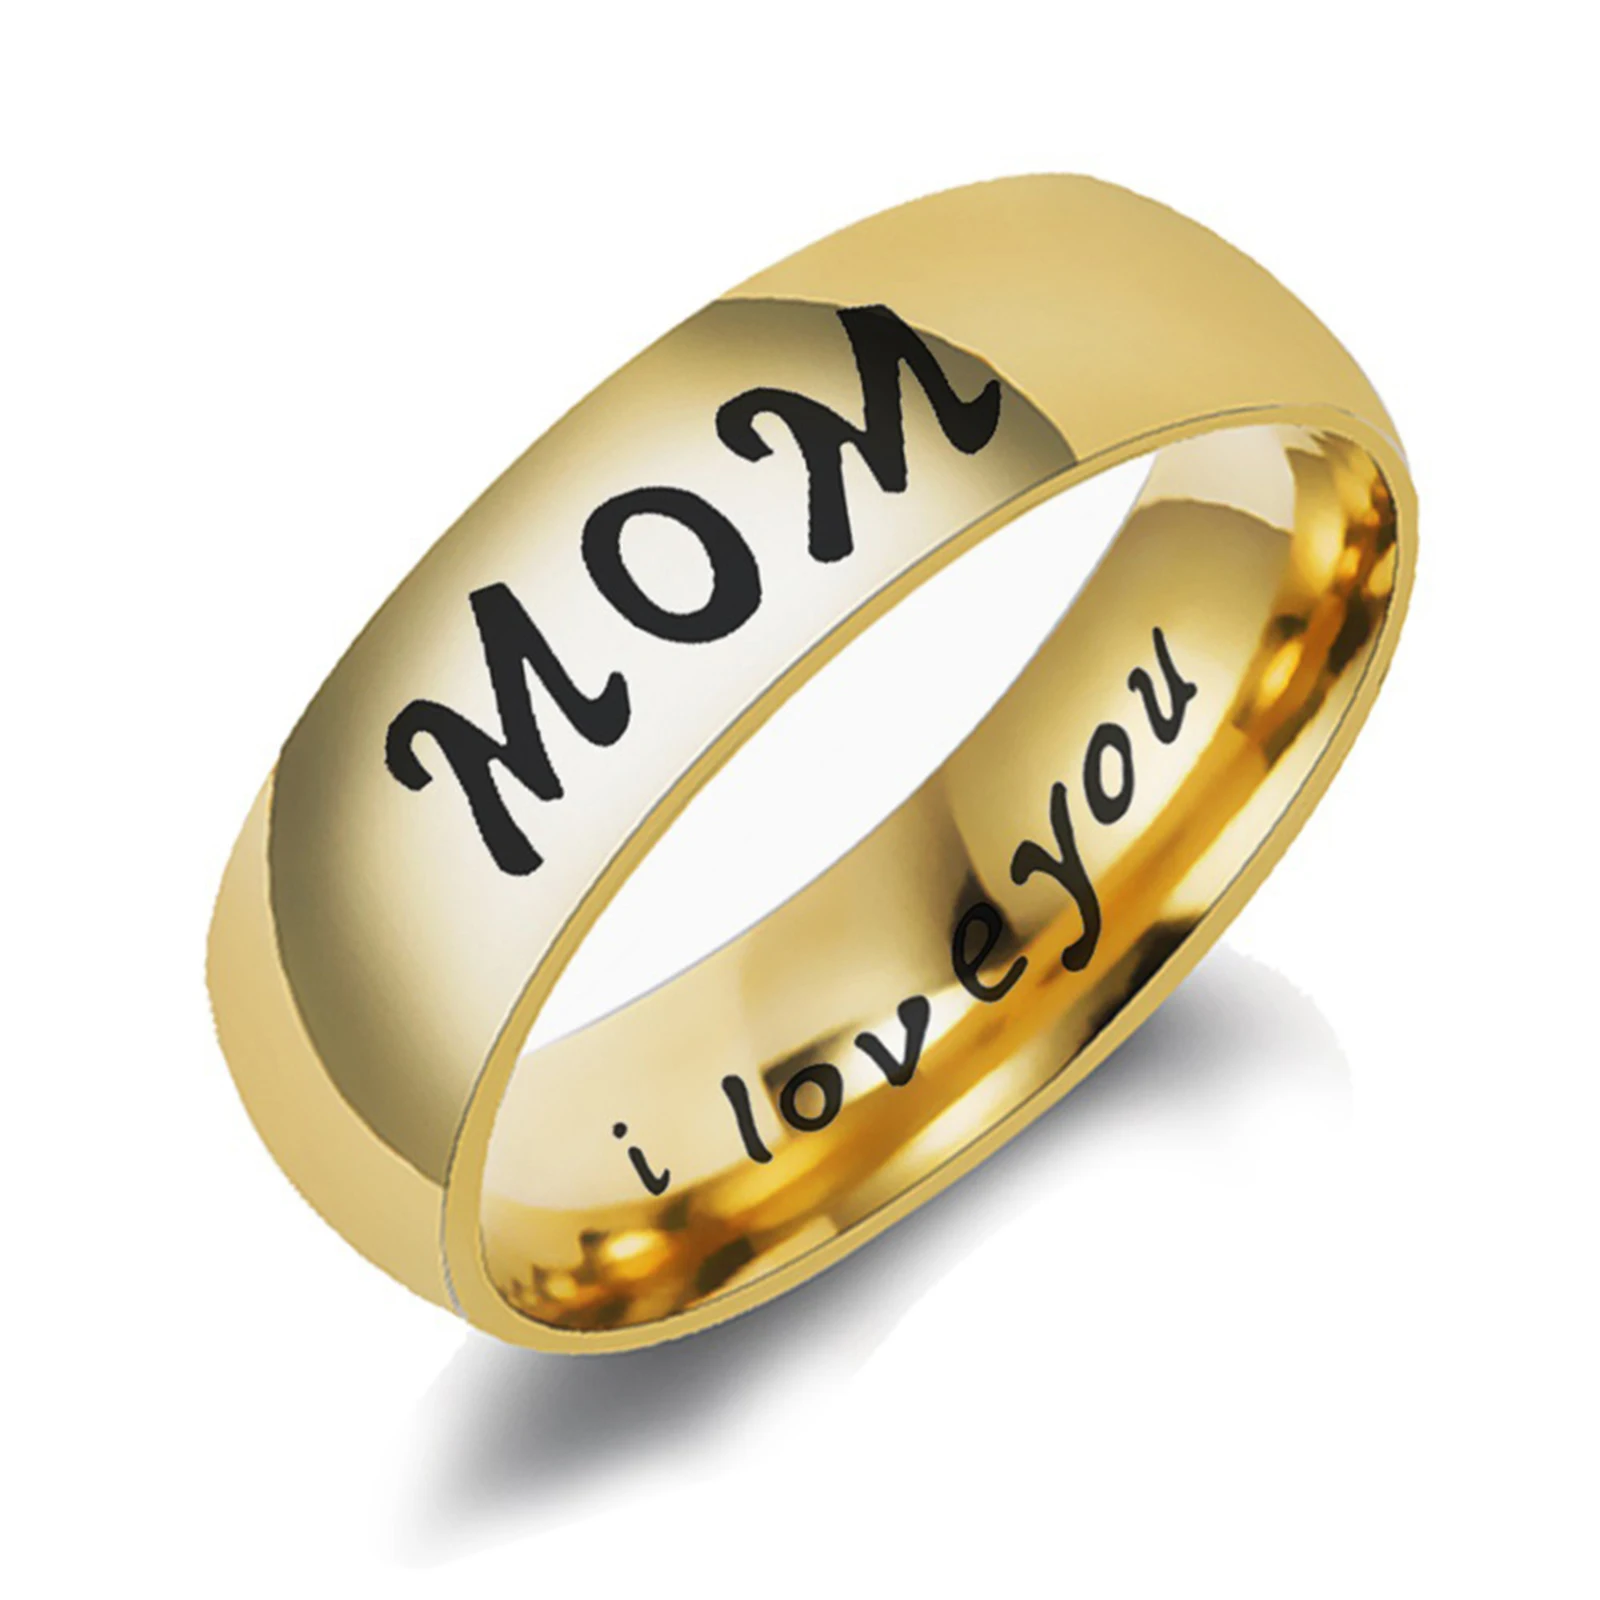 Кольца мама папа. Кольцо для папы. Золотое кольцо мама. Кольцо мама и папа. Дорогой подарок маме и папе кольца.